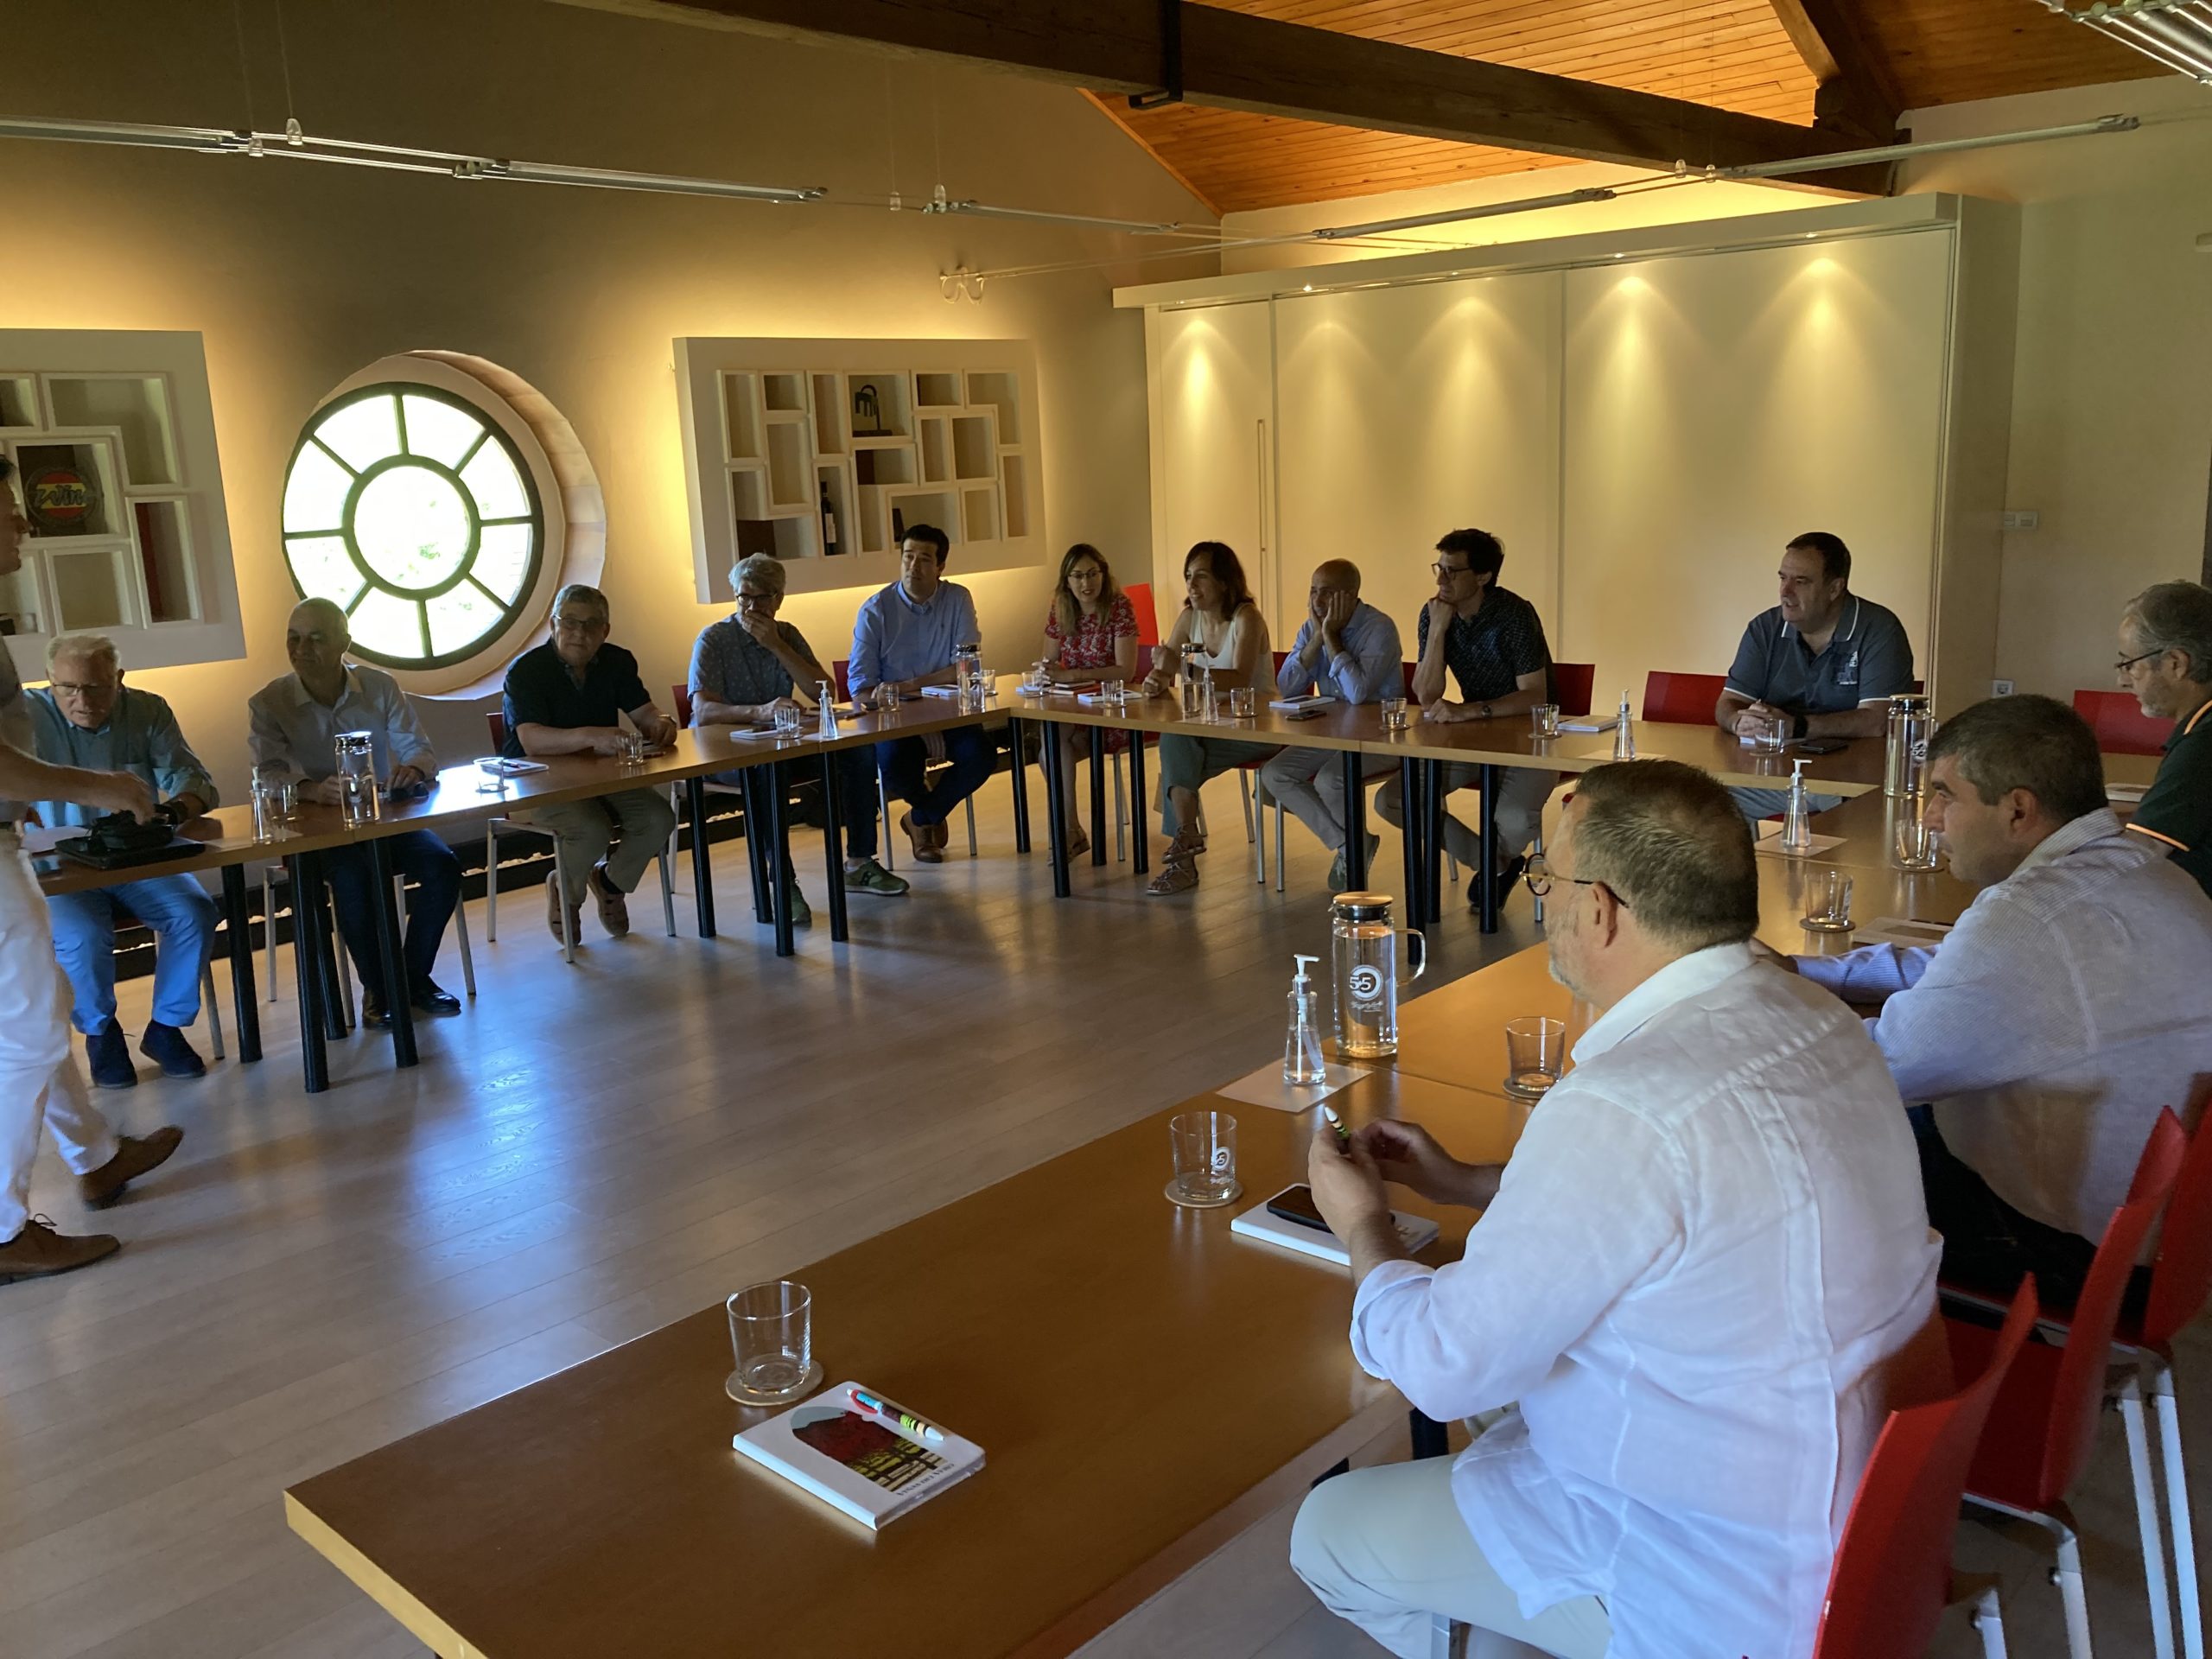 Los socios realizan reuniones periódicas, como esta, en Viñas del Vero. FOTO: Huesca Excelente.